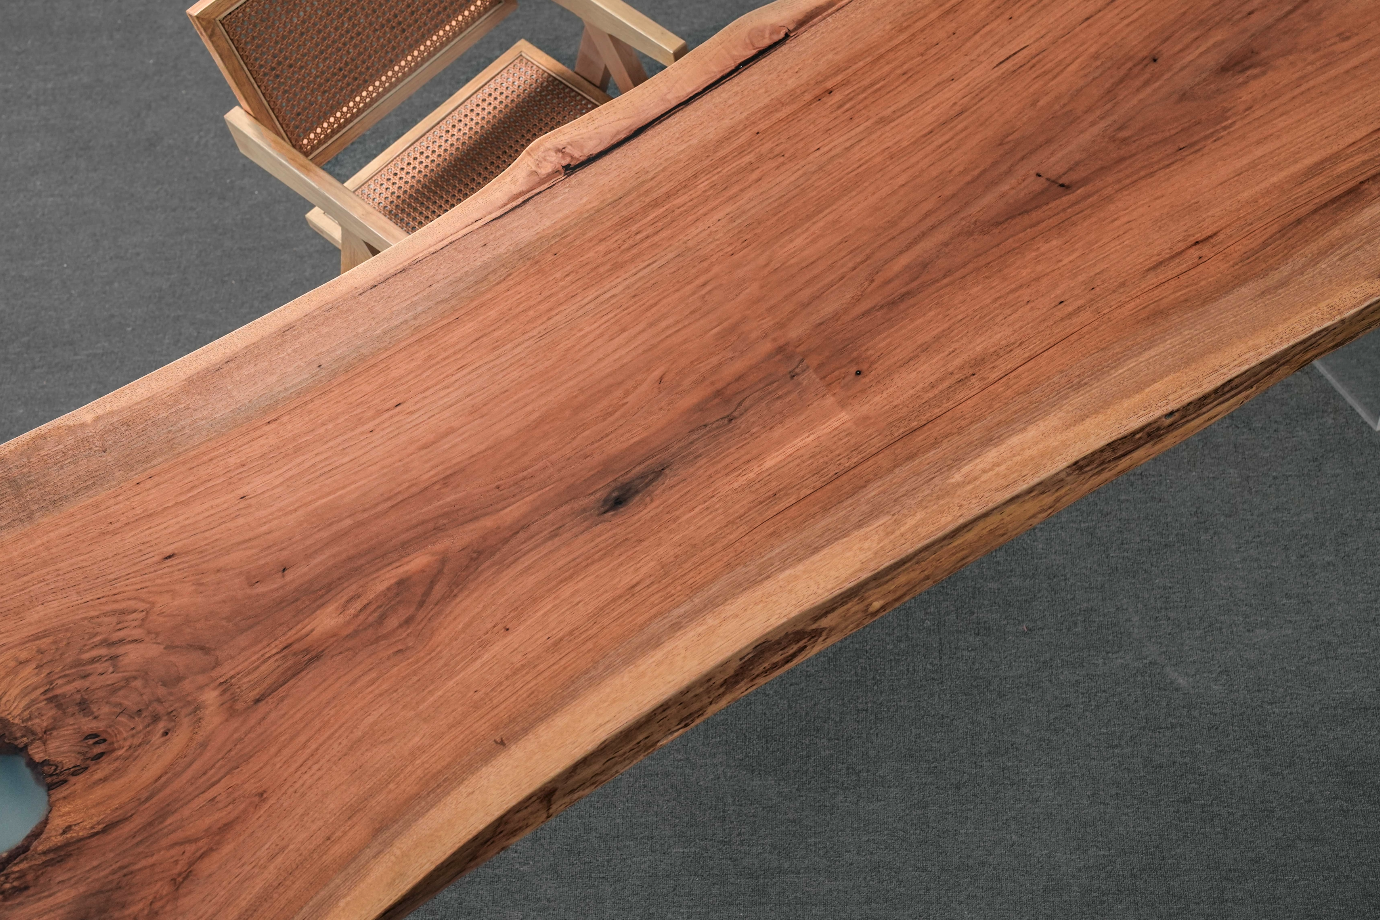 Muebles personalizados de madera de cerezo Live Edge, mesa de comedor de cerezo, mesa de cerezo de EE. UU.